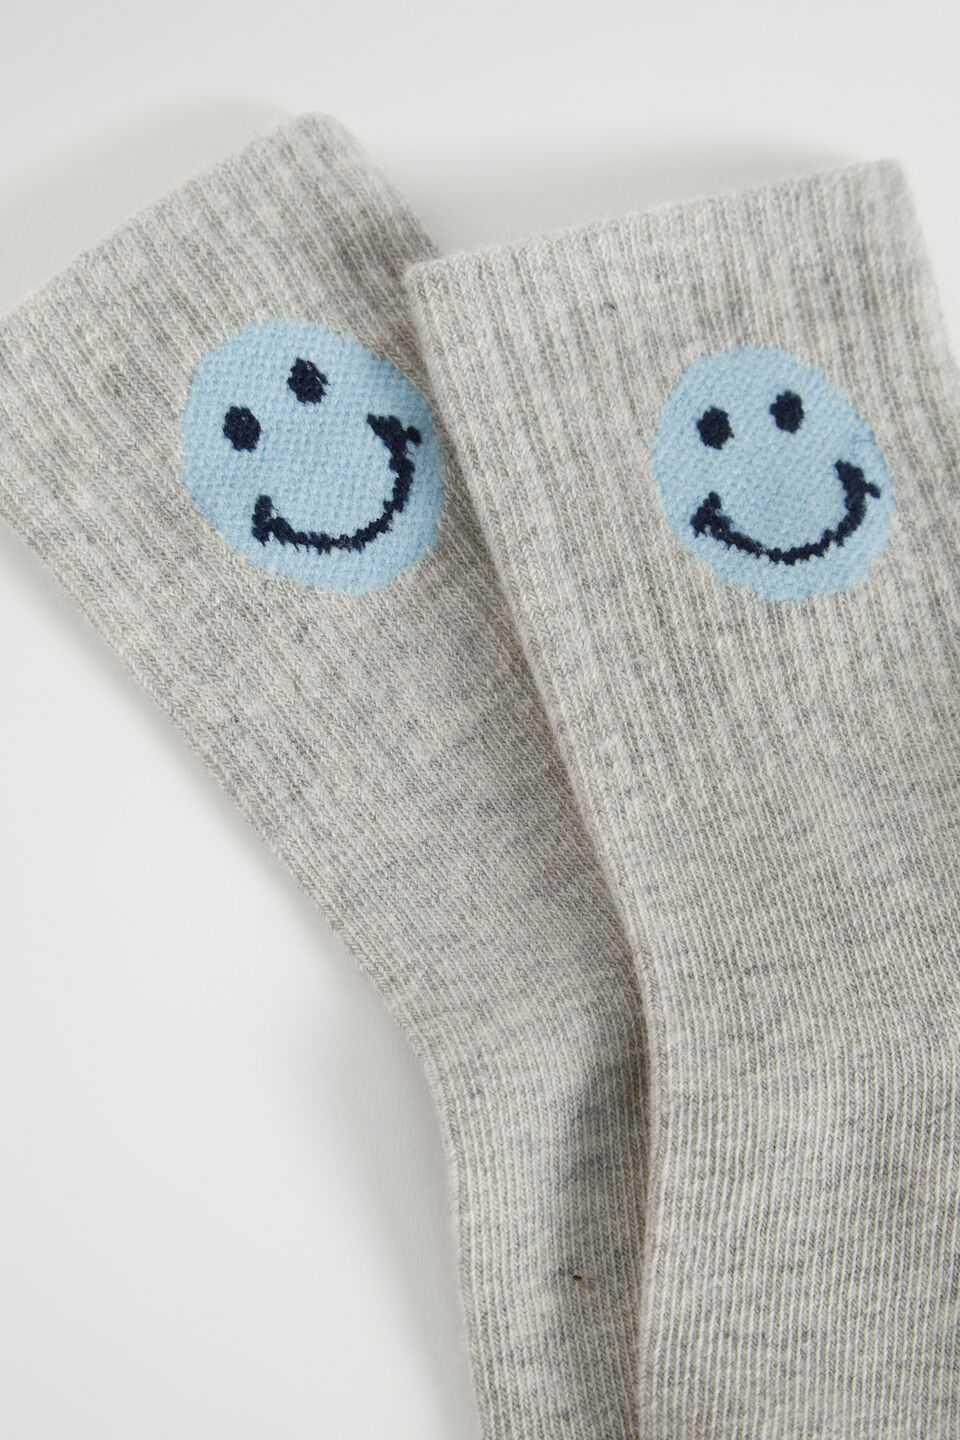 Smiley Sock  Multi